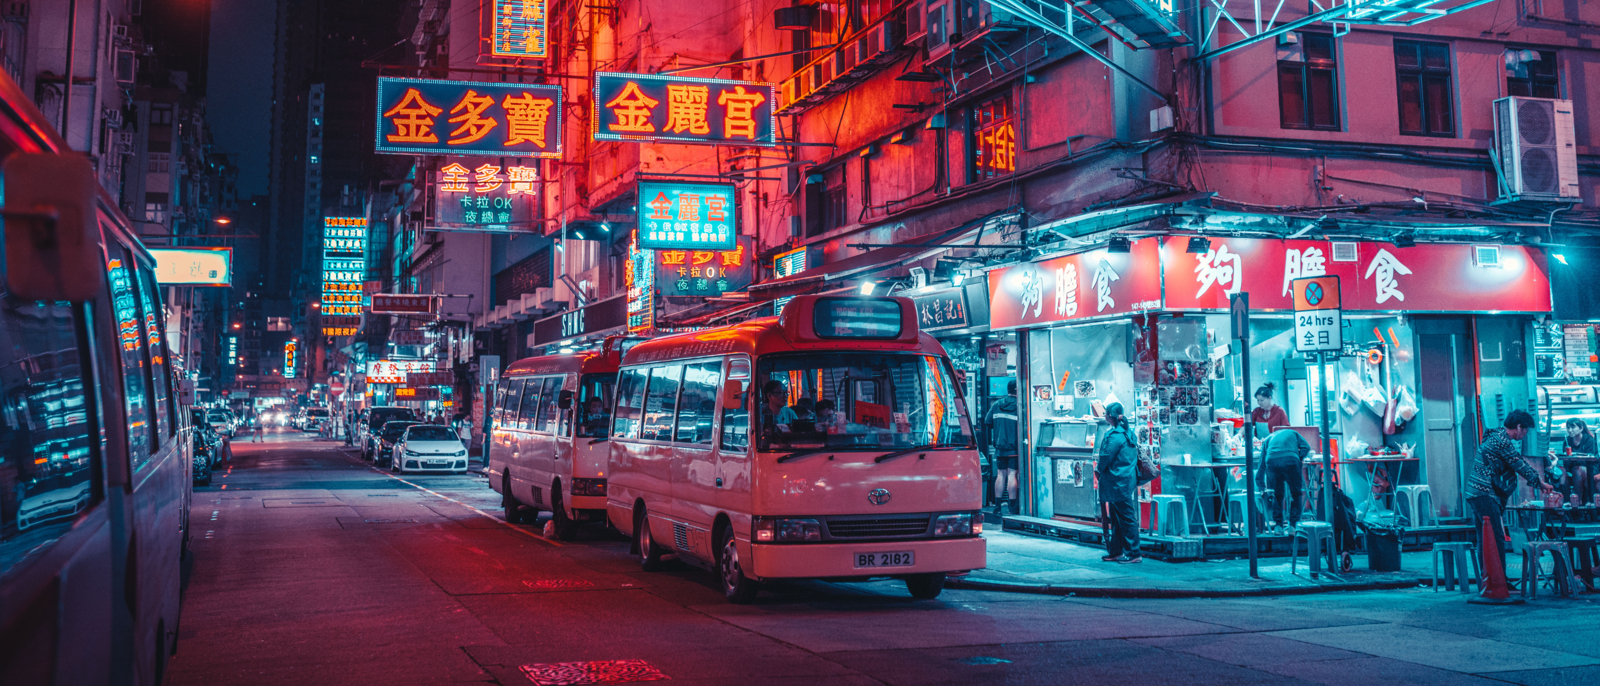 Neon signs at night Hongkong, China